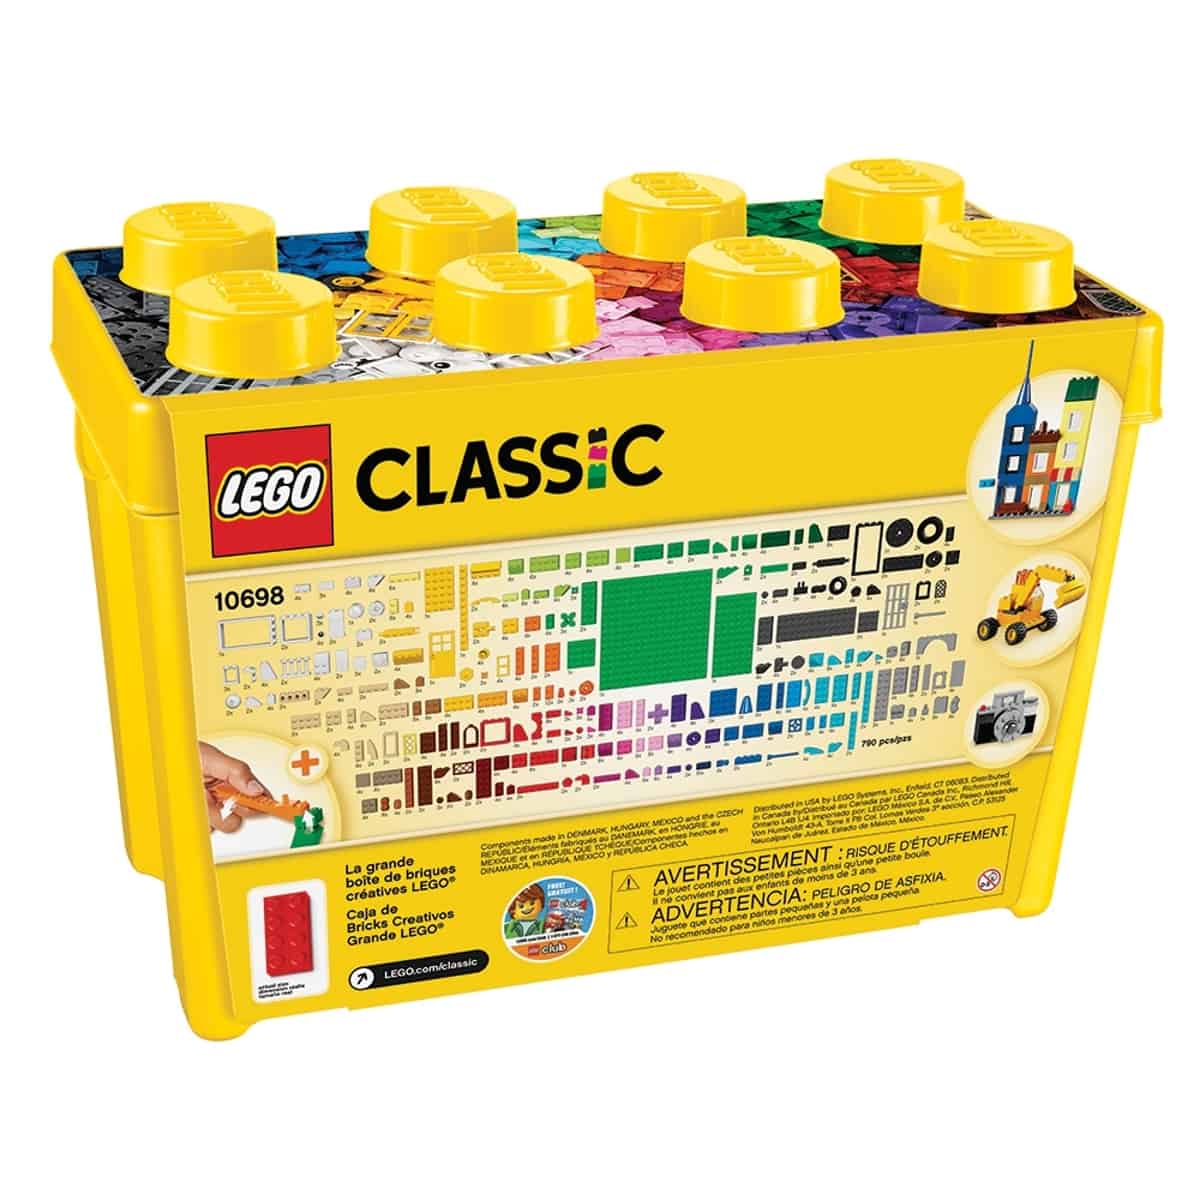 velky kreativny box lego 10698